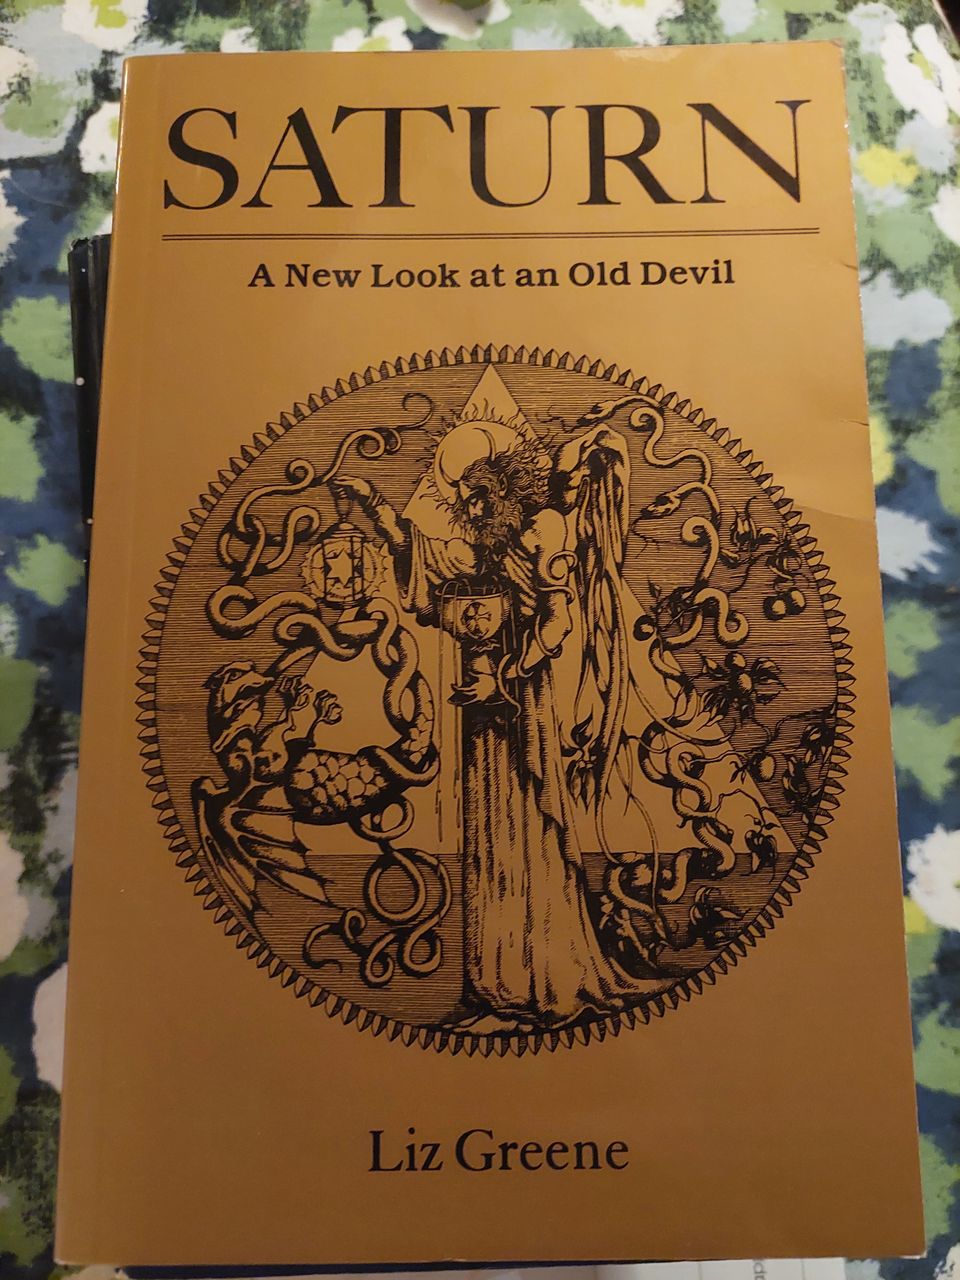 Saturn: A New Look at an Old Devil -Liz Greene